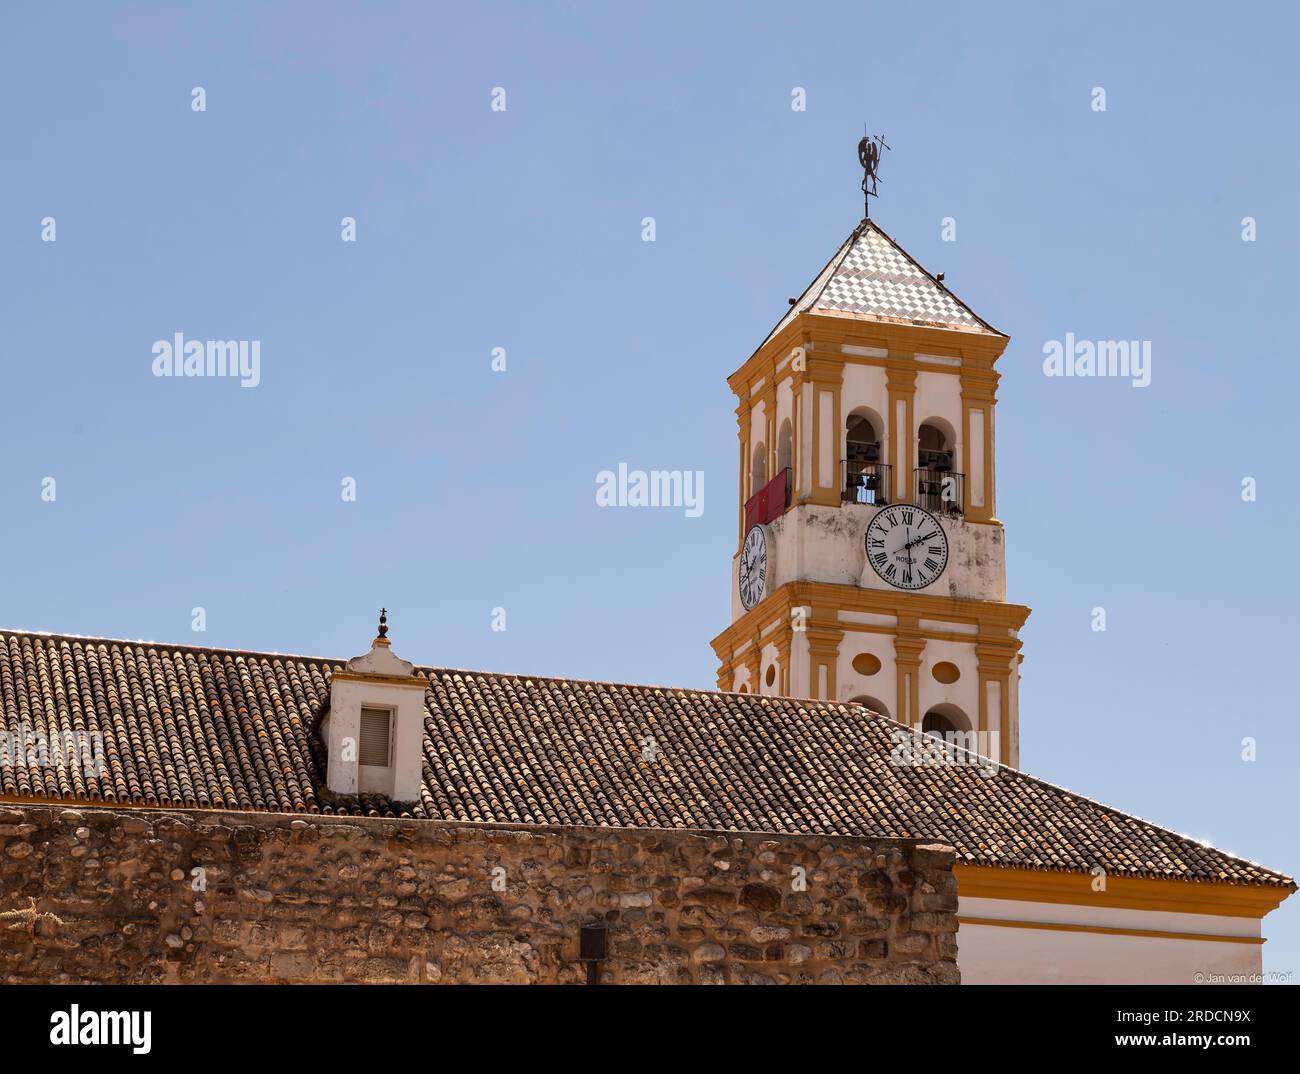 Chiesa Iglesia de la Encarnación (Chiesa dell'Incarnazione) nella città vecchia di Marbella, nel sud della Spagna. Foto Stock